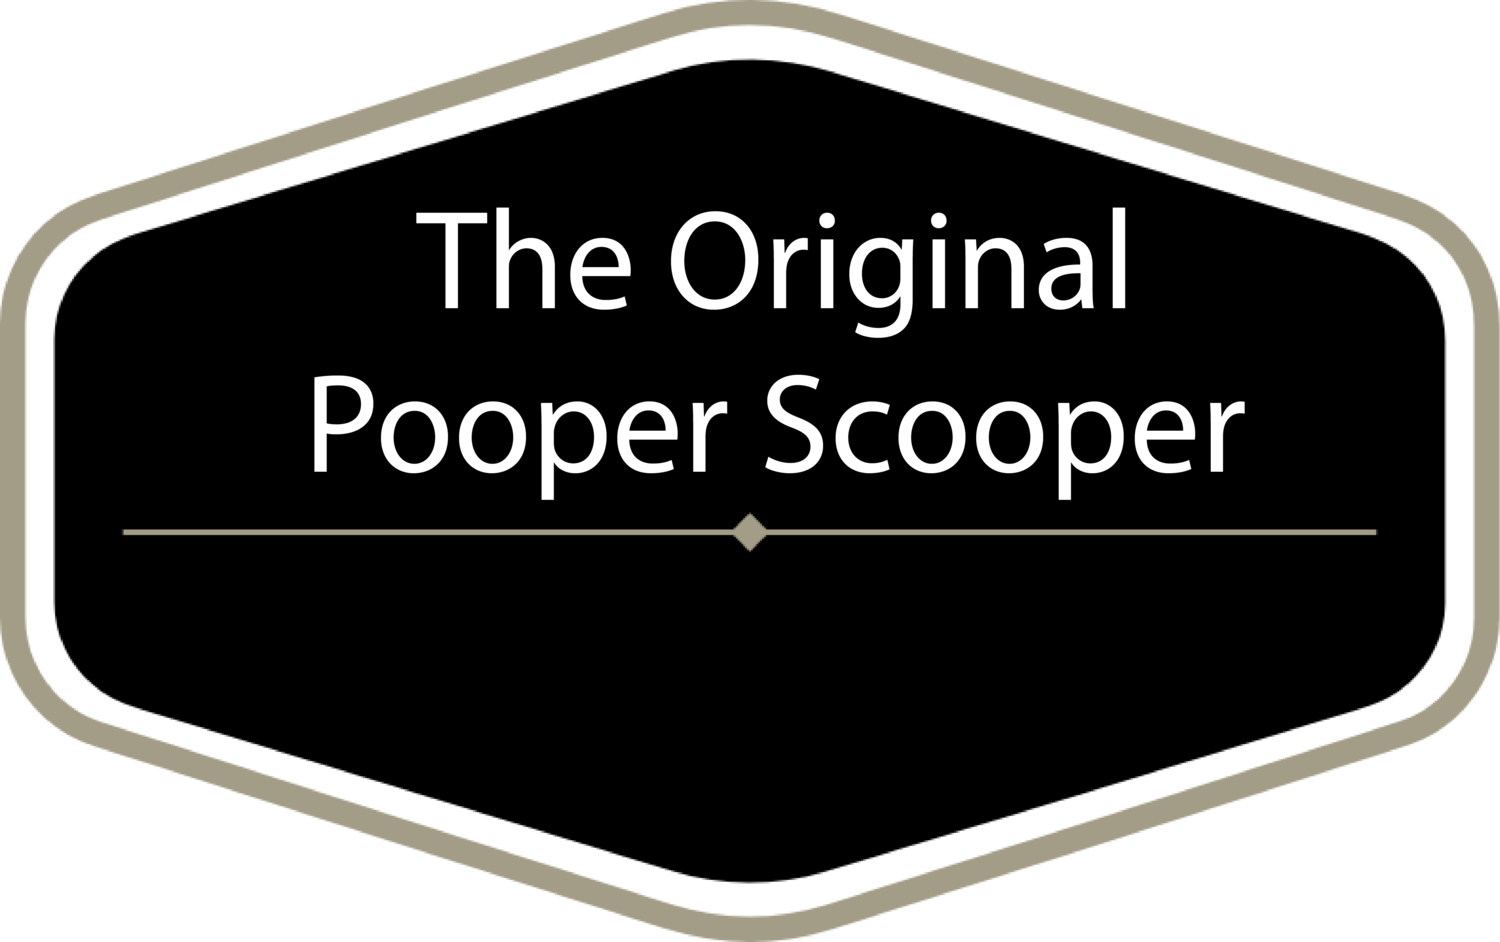 The Original Pooper Scooper